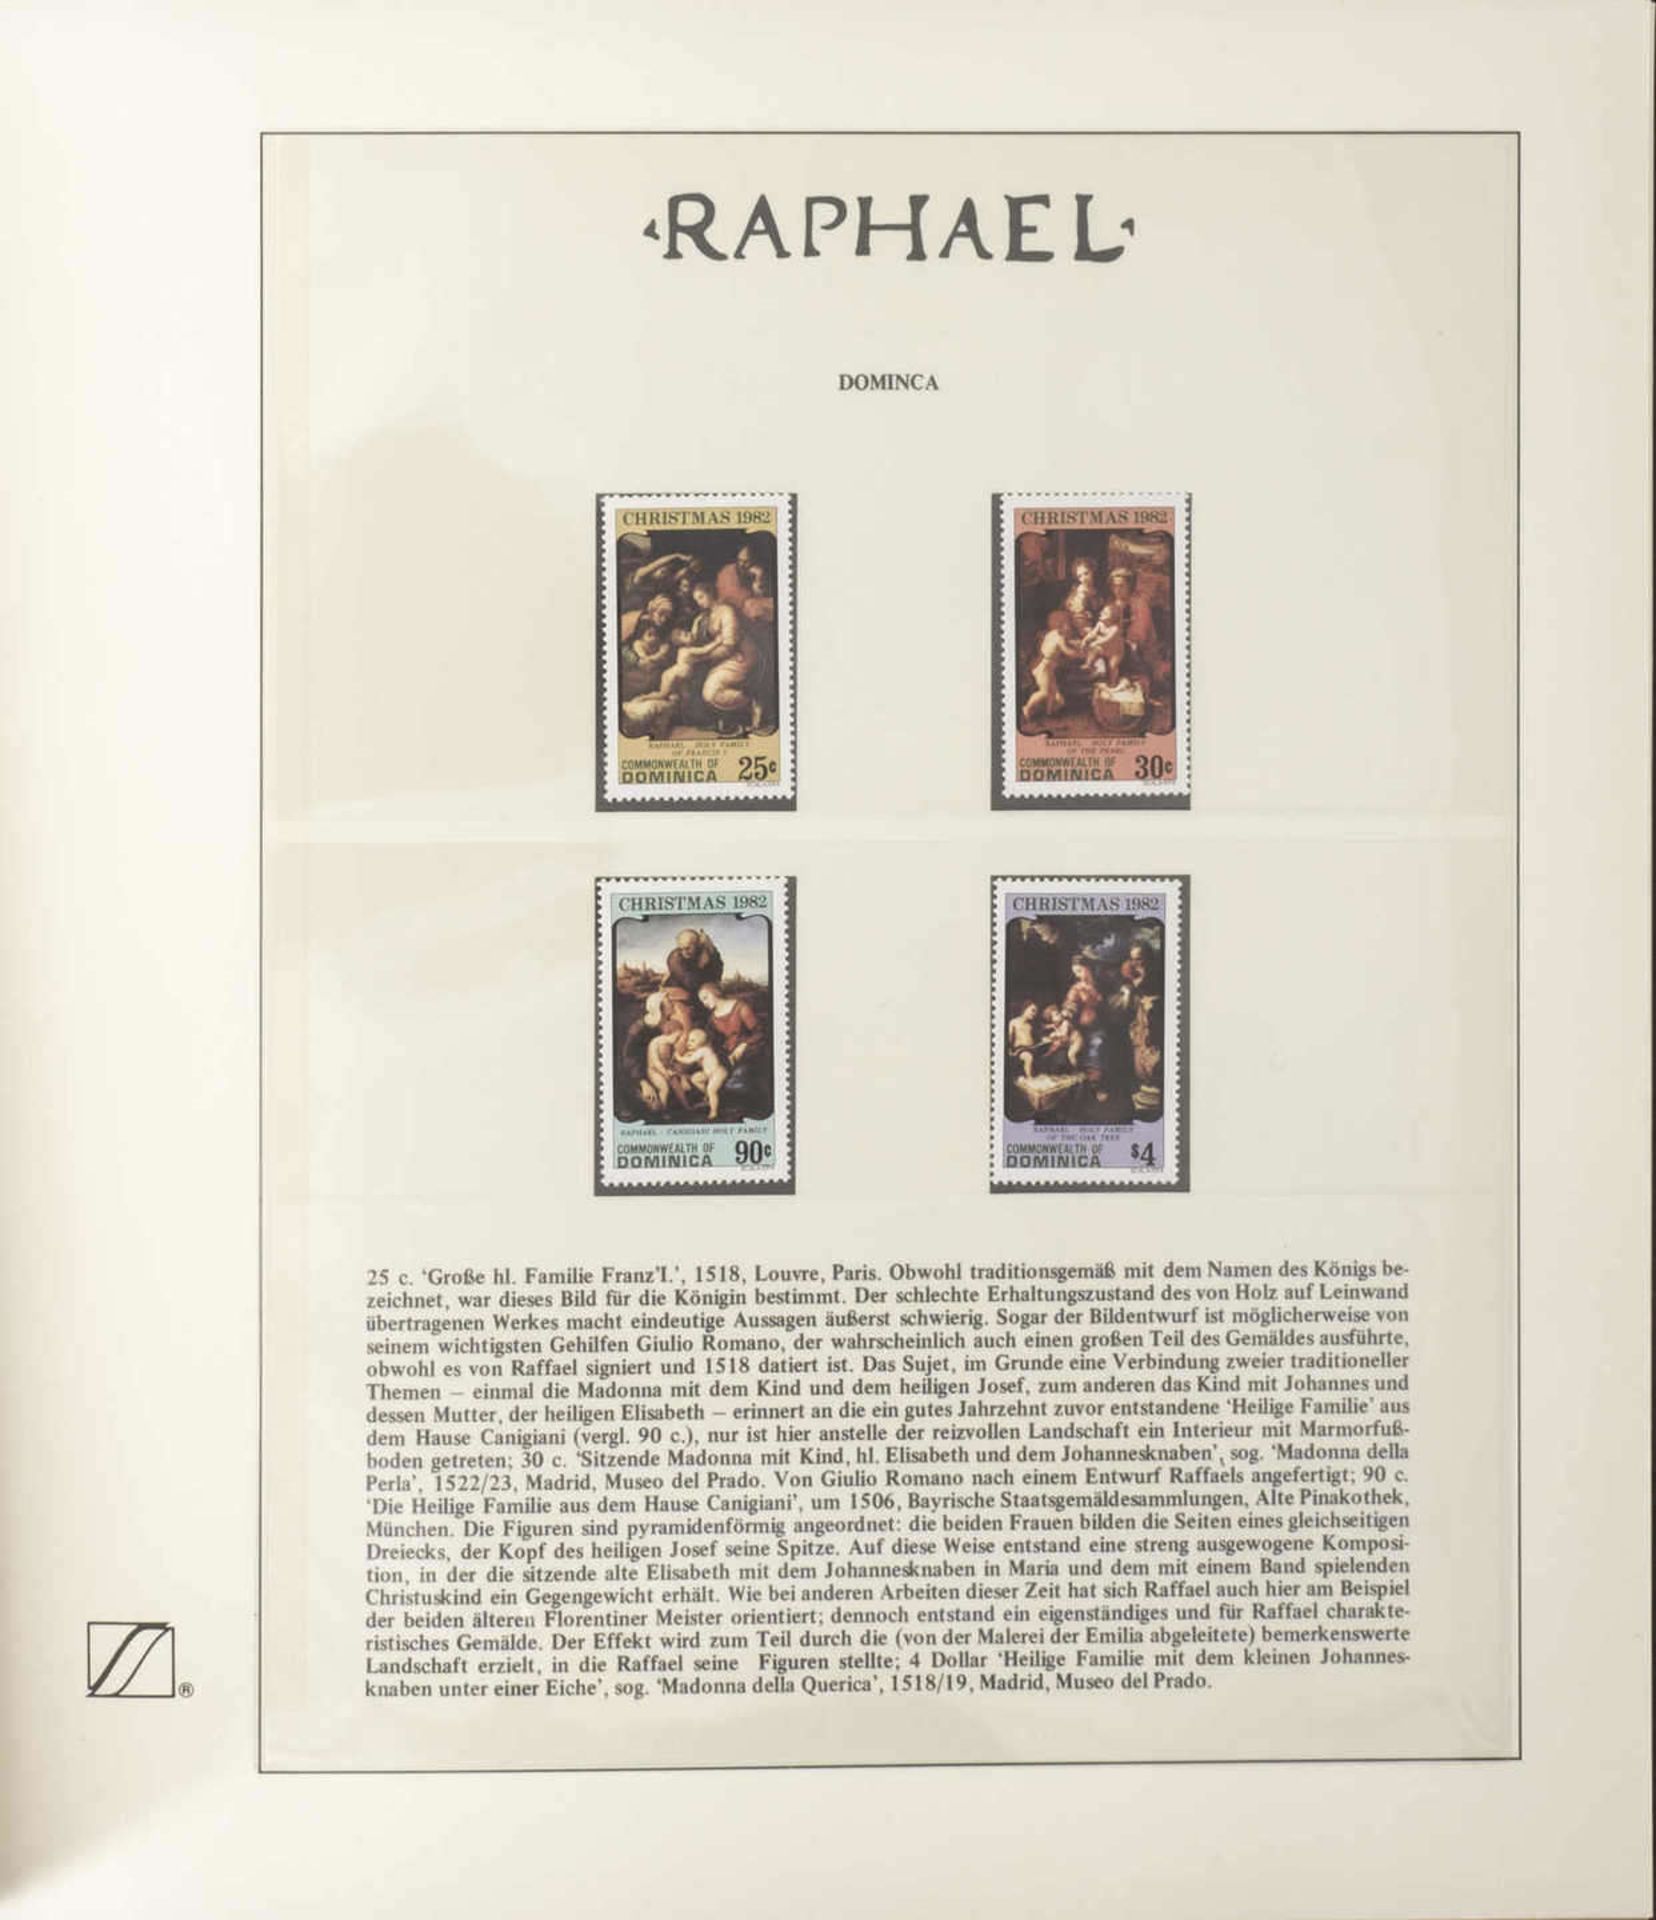 50 Jahre Bundesrepublik Deutschland im Album. Dazu Album ""Raphael"" und ein Lot Jubiläumsbriefe / - Bild 16 aus 21